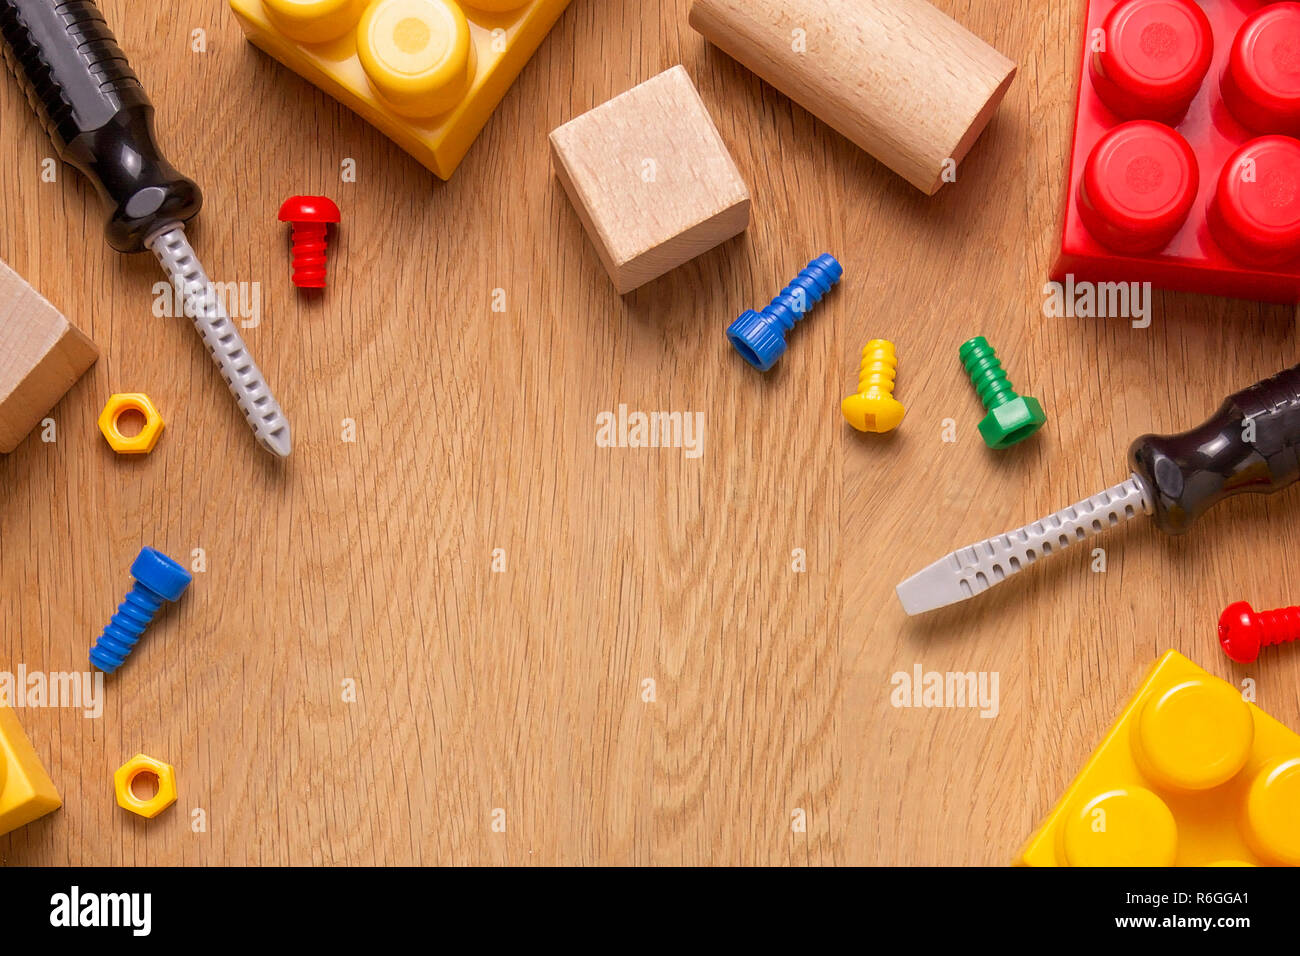 Kinder Spielzeug Rahmen Hintergrund mit Spielzeug Tools, Blöcke und Würfel auf hölzernen Tisch Stockfoto